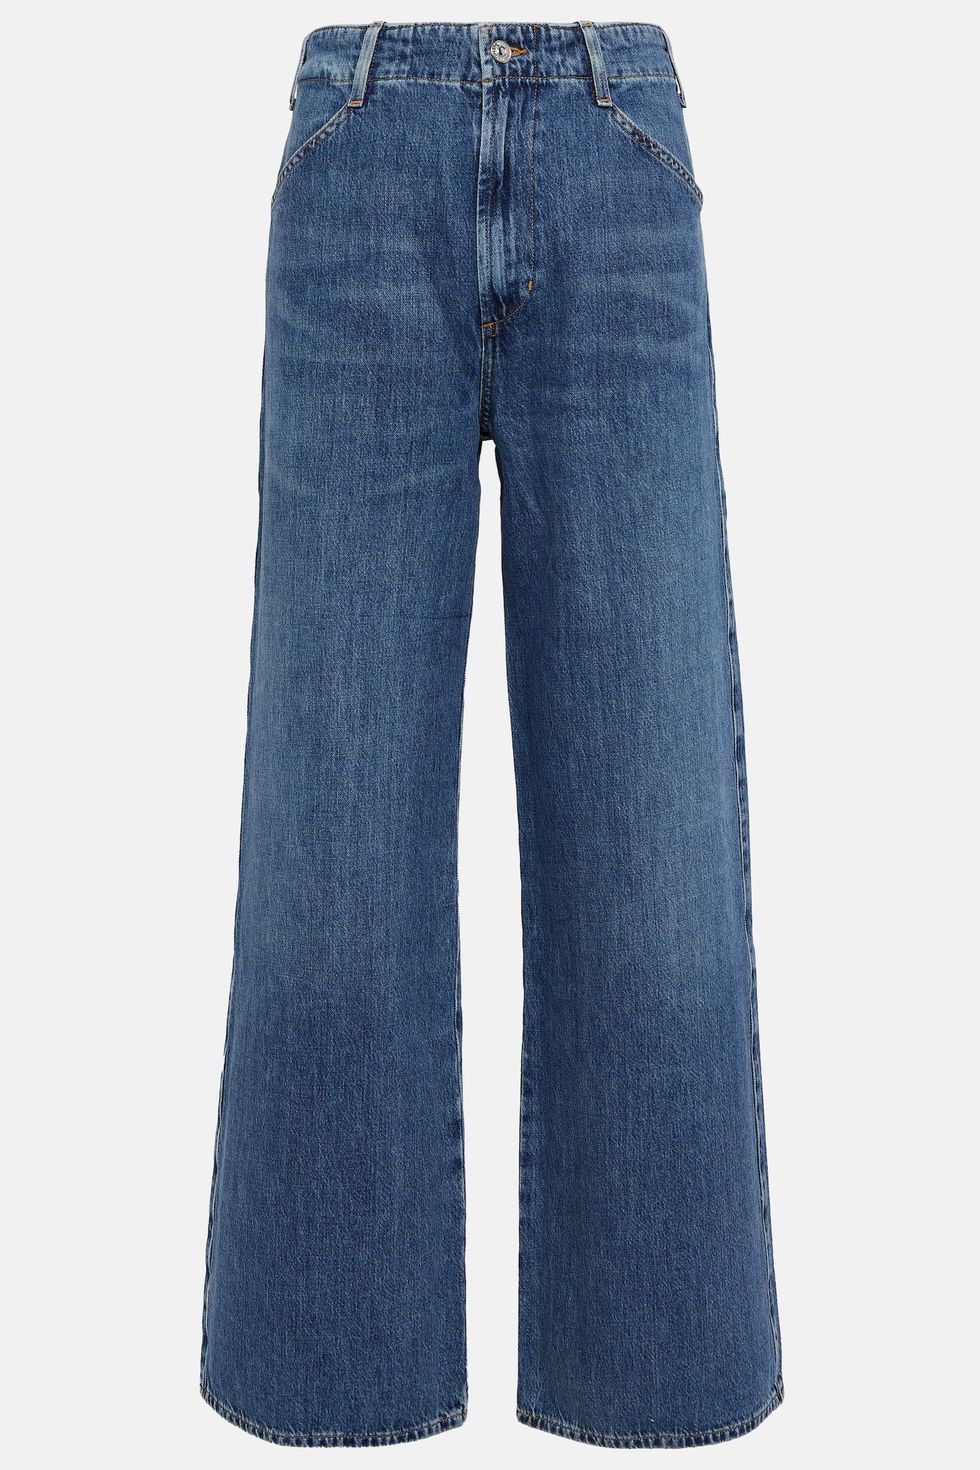 25 стильных пар широких джинсов на все случаи жизни